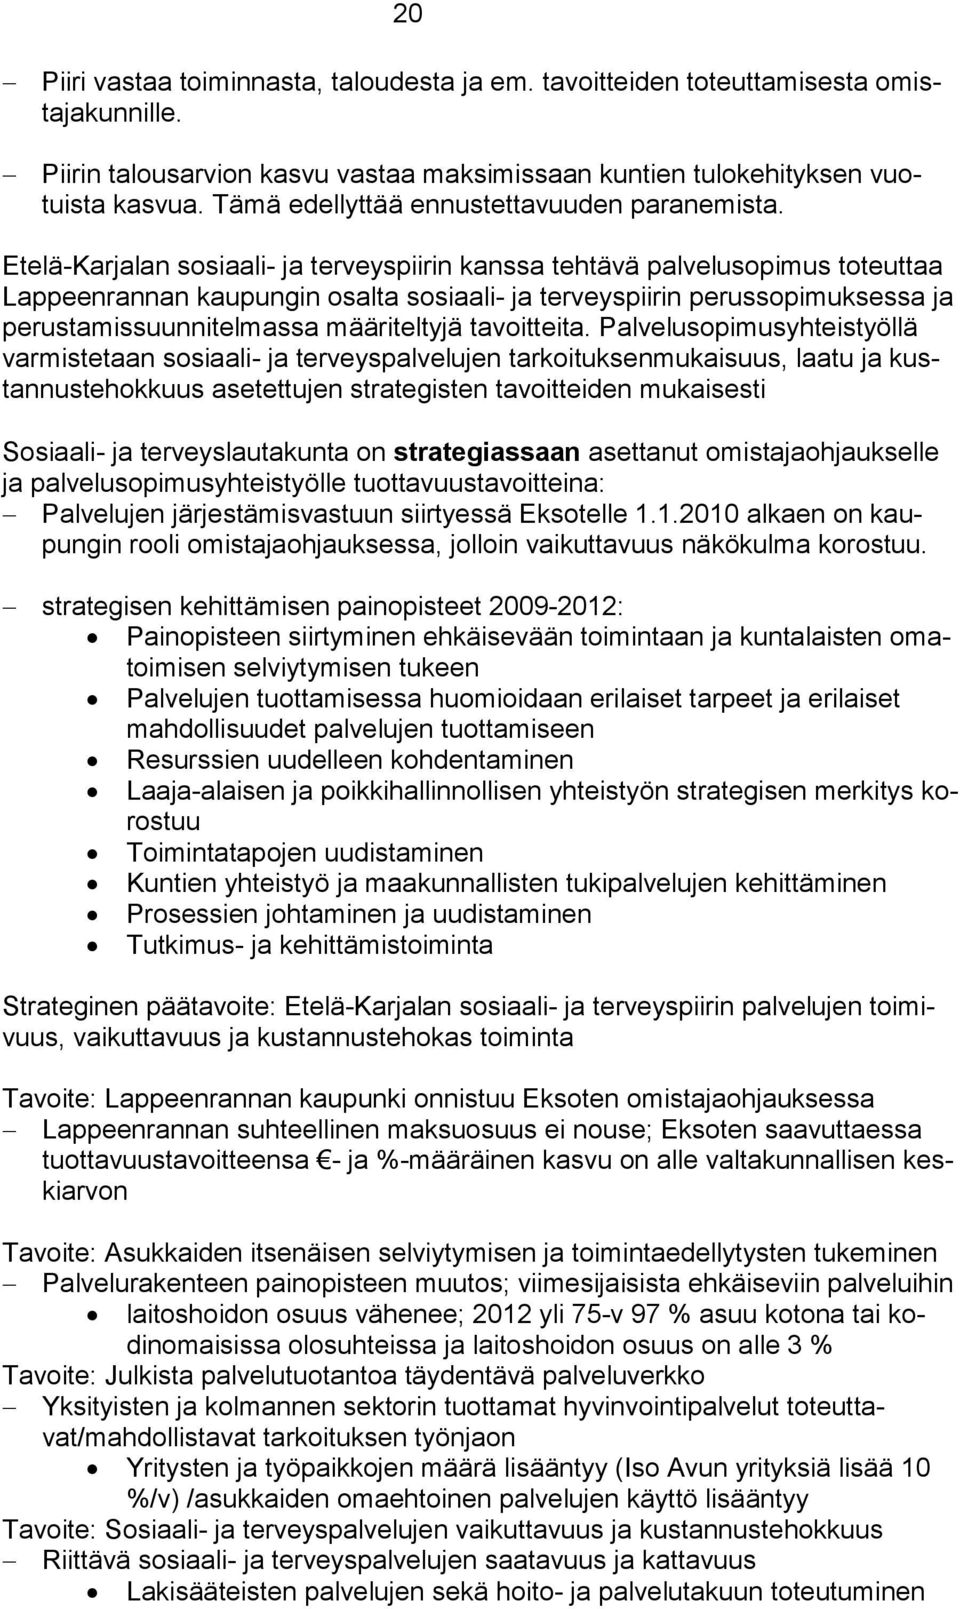 Etelä-Karjalan sosiaali- ja terveyspiirin kanssa tehtävä palvelusopimus toteuttaa Lappeenrannan kaupungin osalta sosiaali- ja terveyspiirin perussopimuksessa ja perustamissuunnitelmassa määriteltyjä